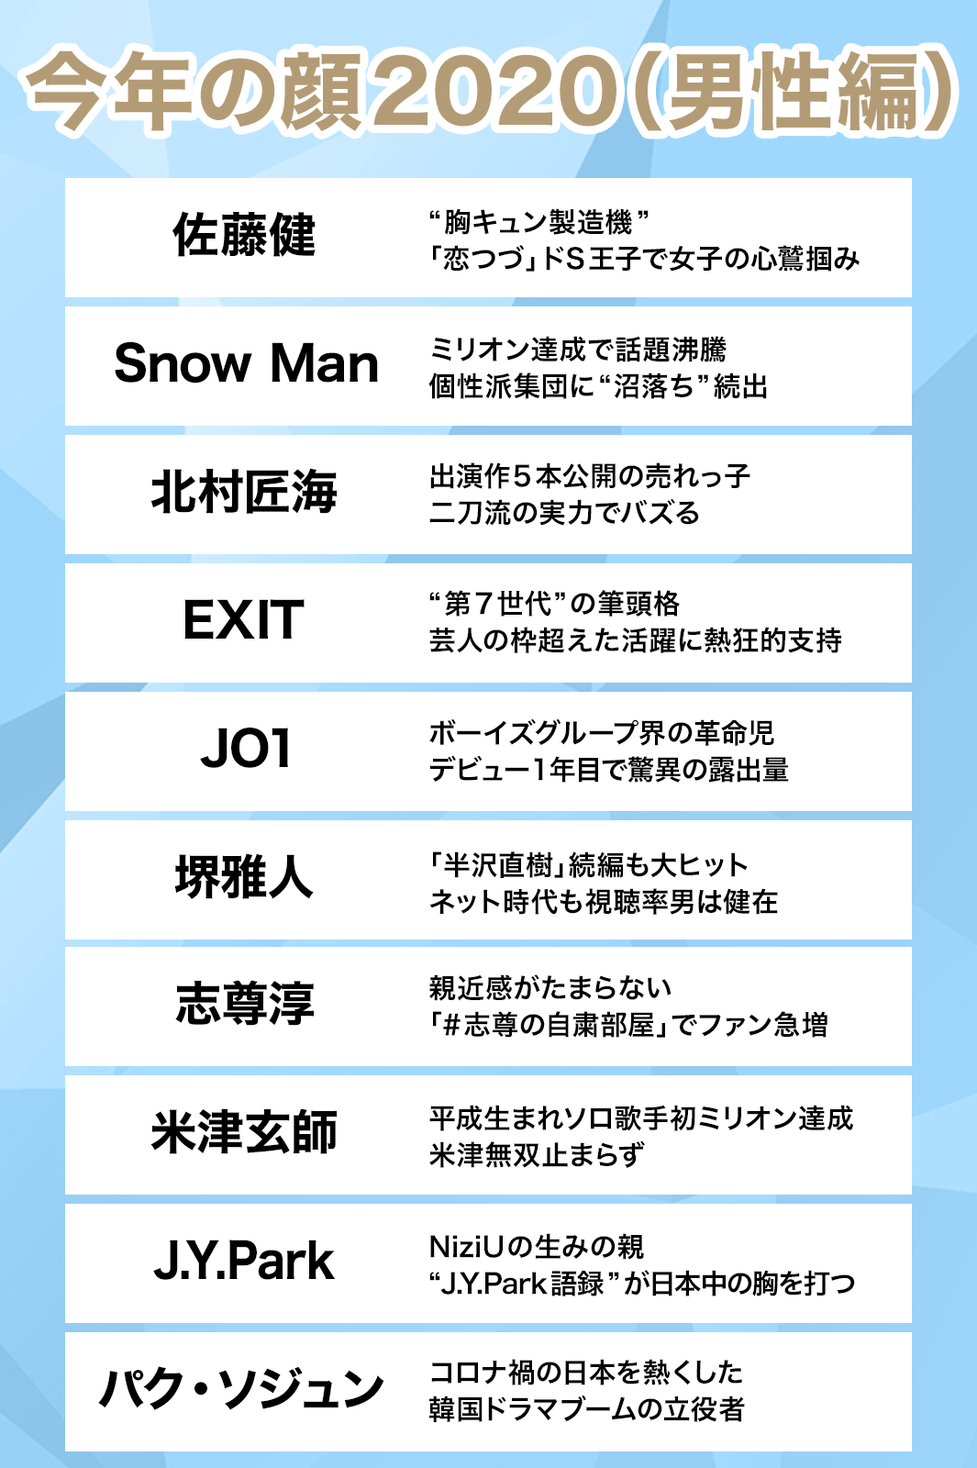 今年の顔 発表 上白石萌音 Niziu 佐藤健 Snow Man 男女各10組選出 モデルプレス のプレスリリース